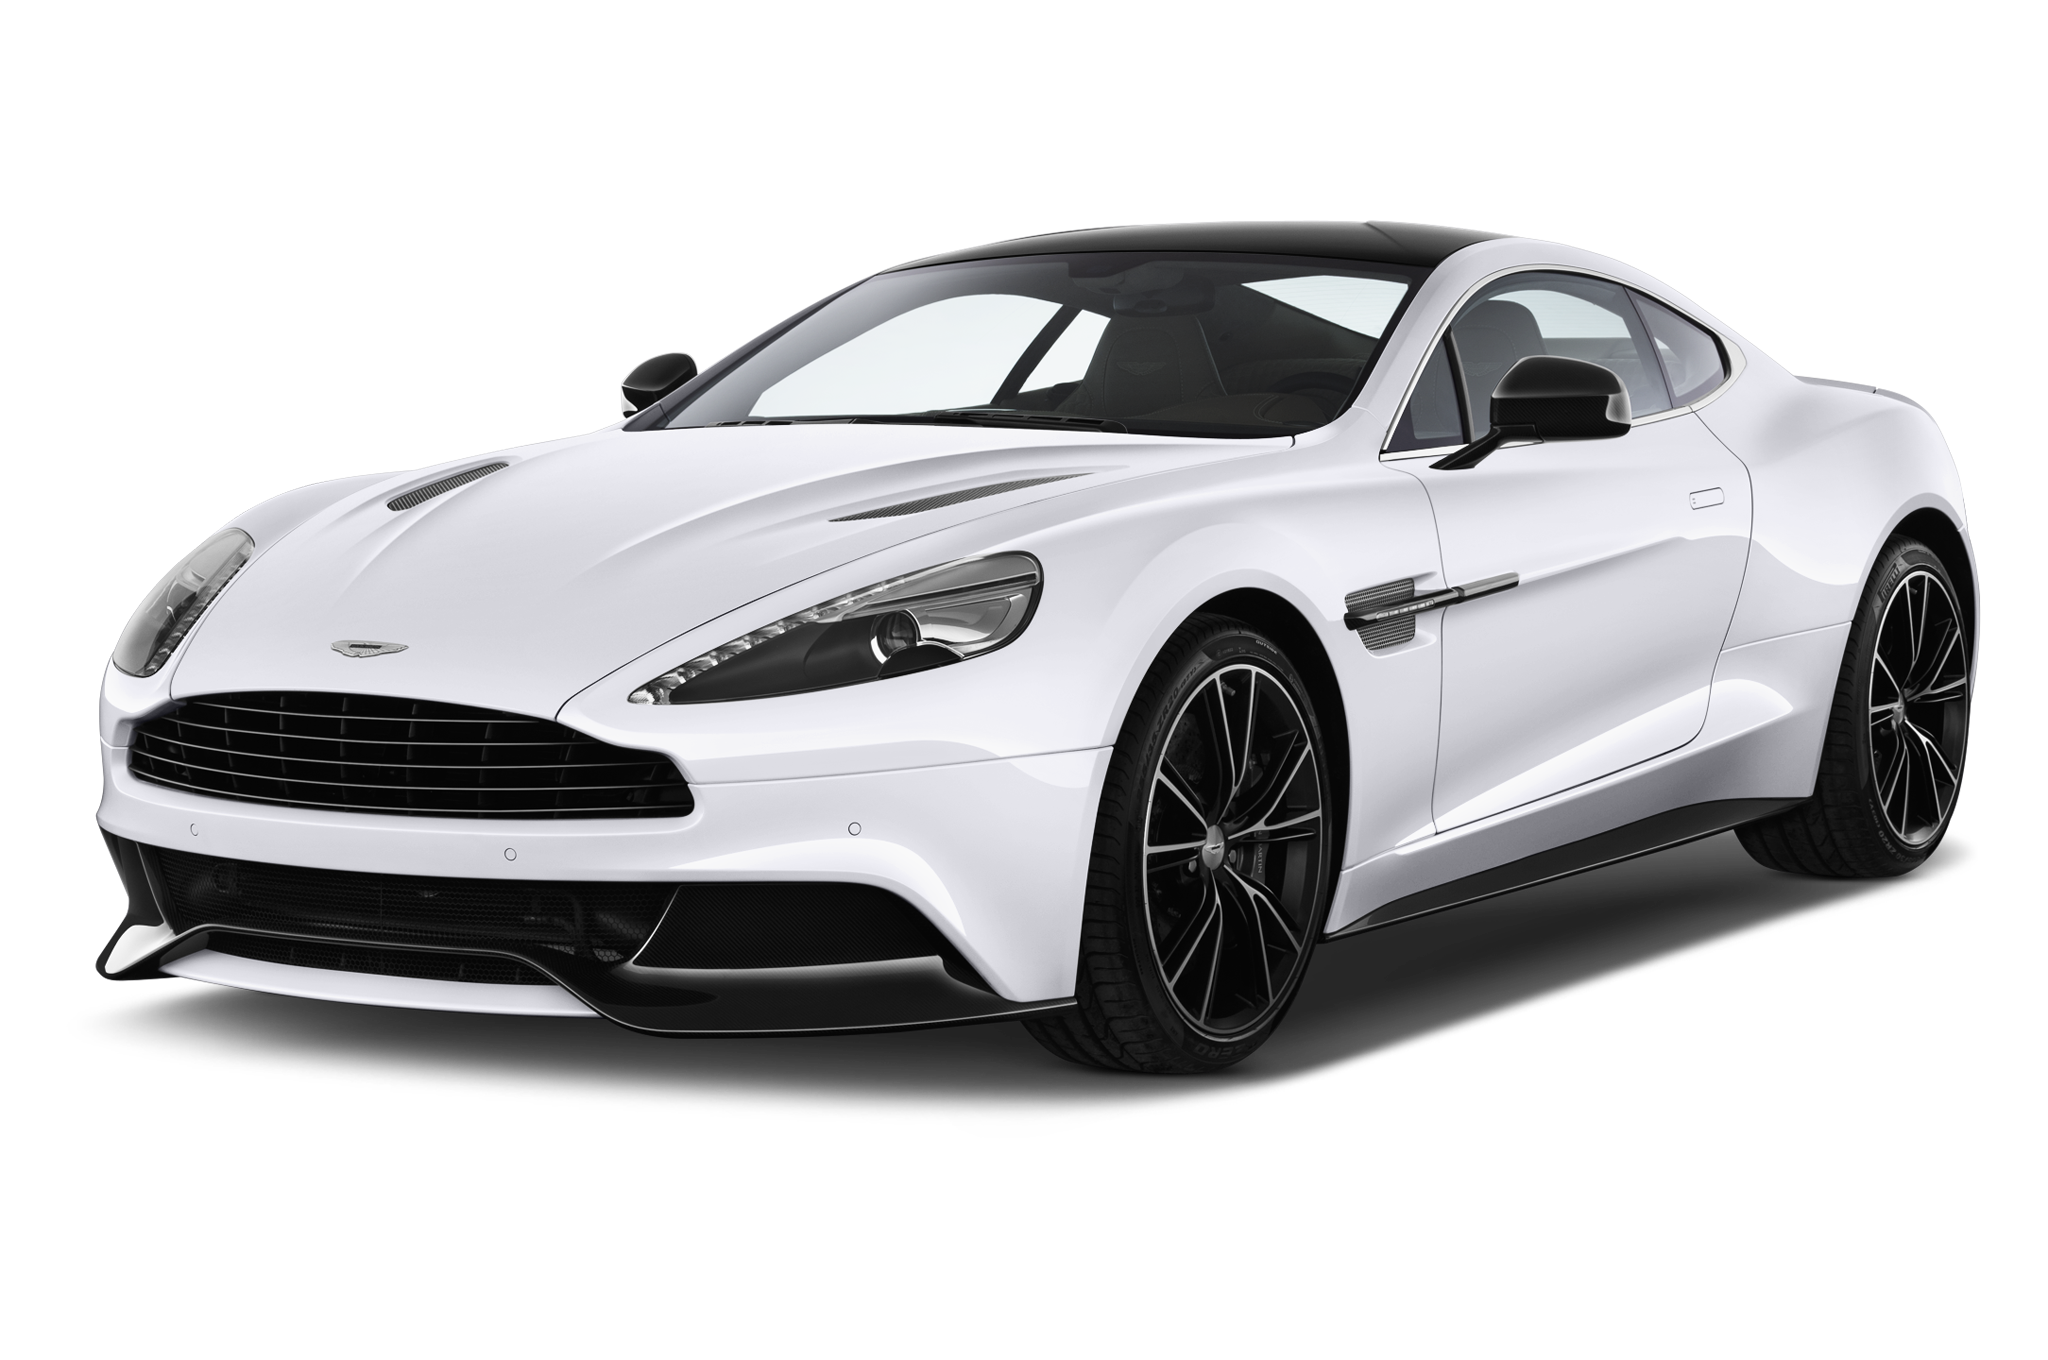 Aston Martin Free Download Png PNG Image